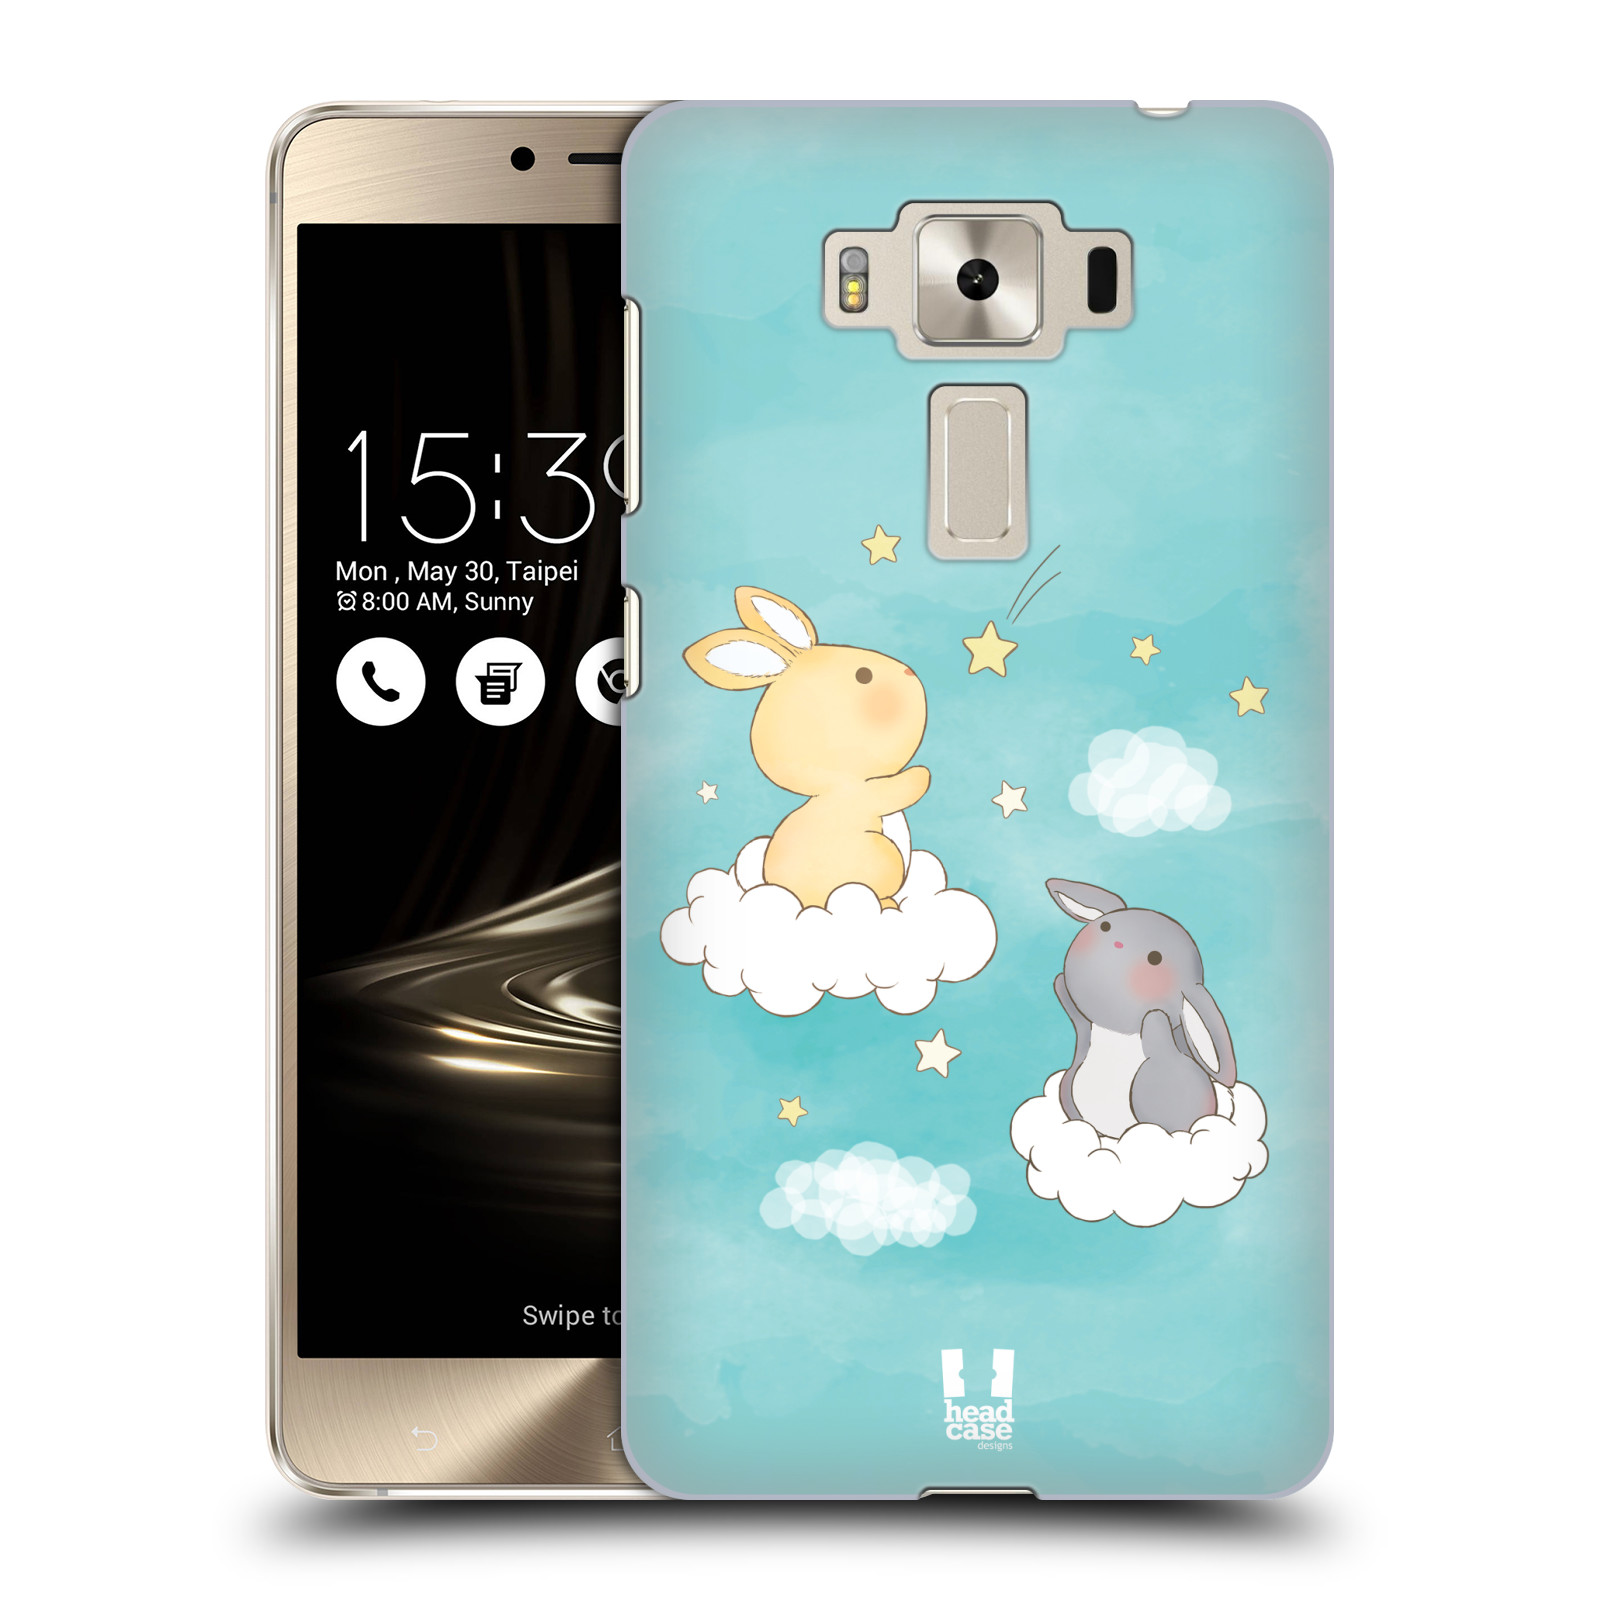 HEAD CASE plastový obal na mobil Asus Zenfone 3 DELUXE ZS550KL vzor králíček a hvězdy modrá